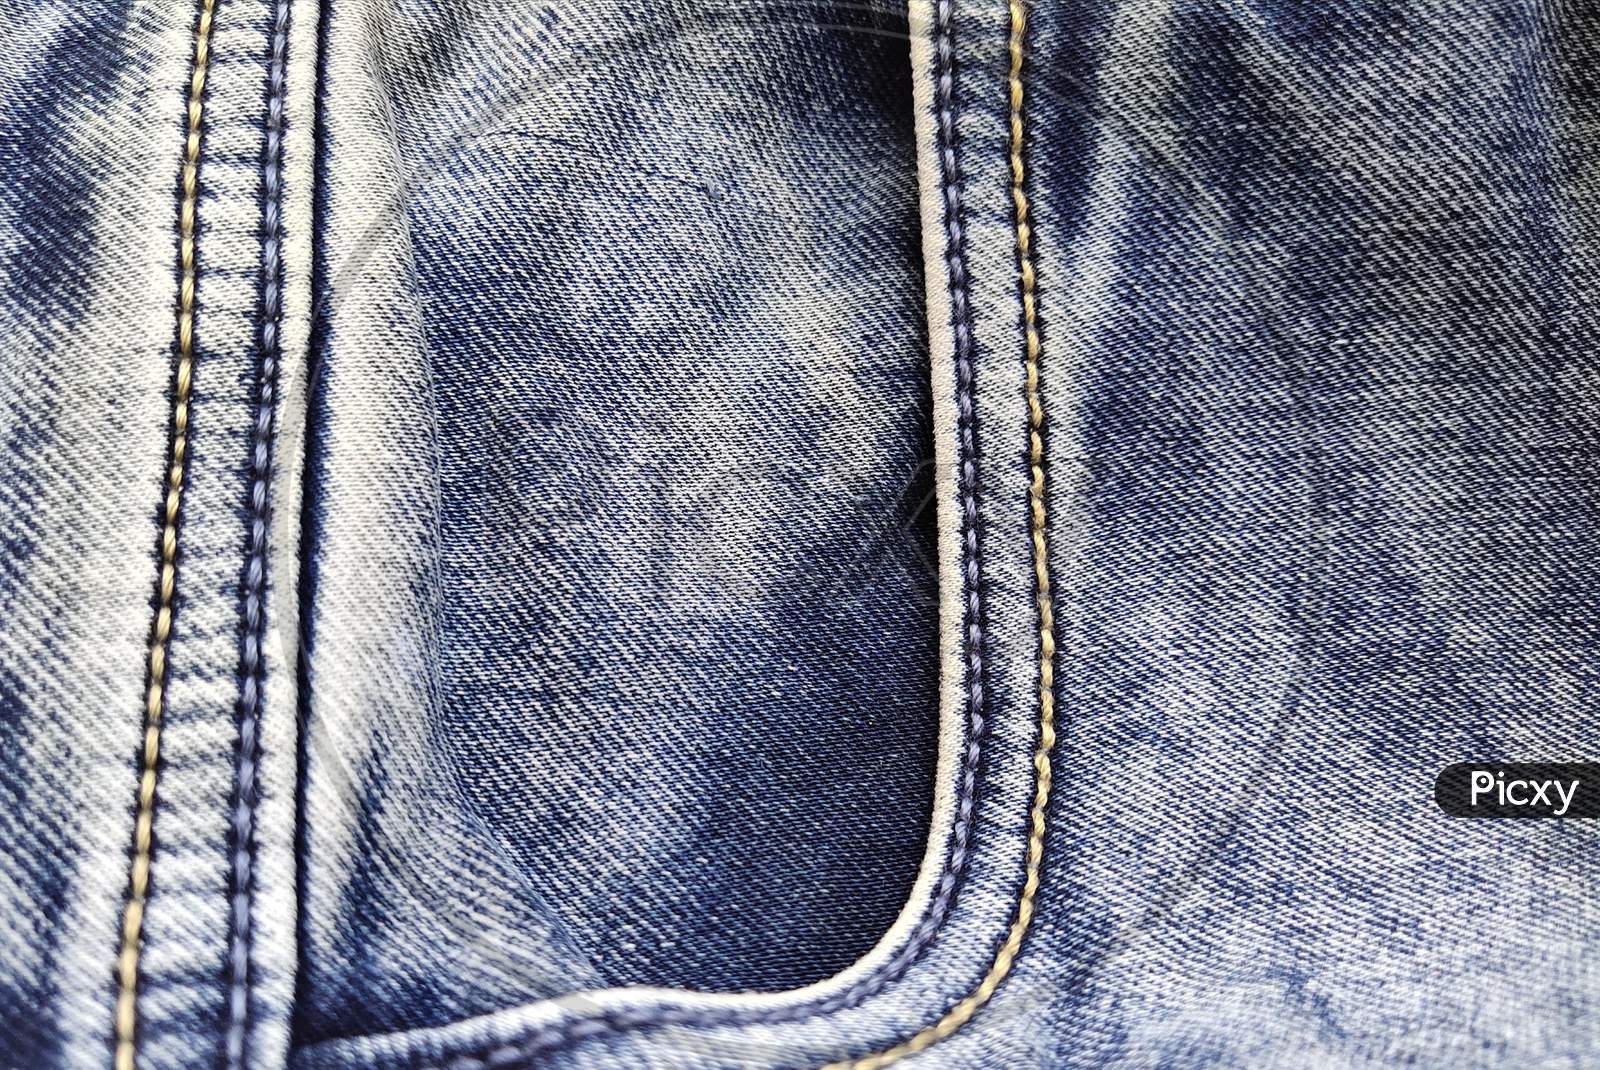 Blue Jeans Background | Purple galaxy wallpaper, Denim background,  Scrapbook background